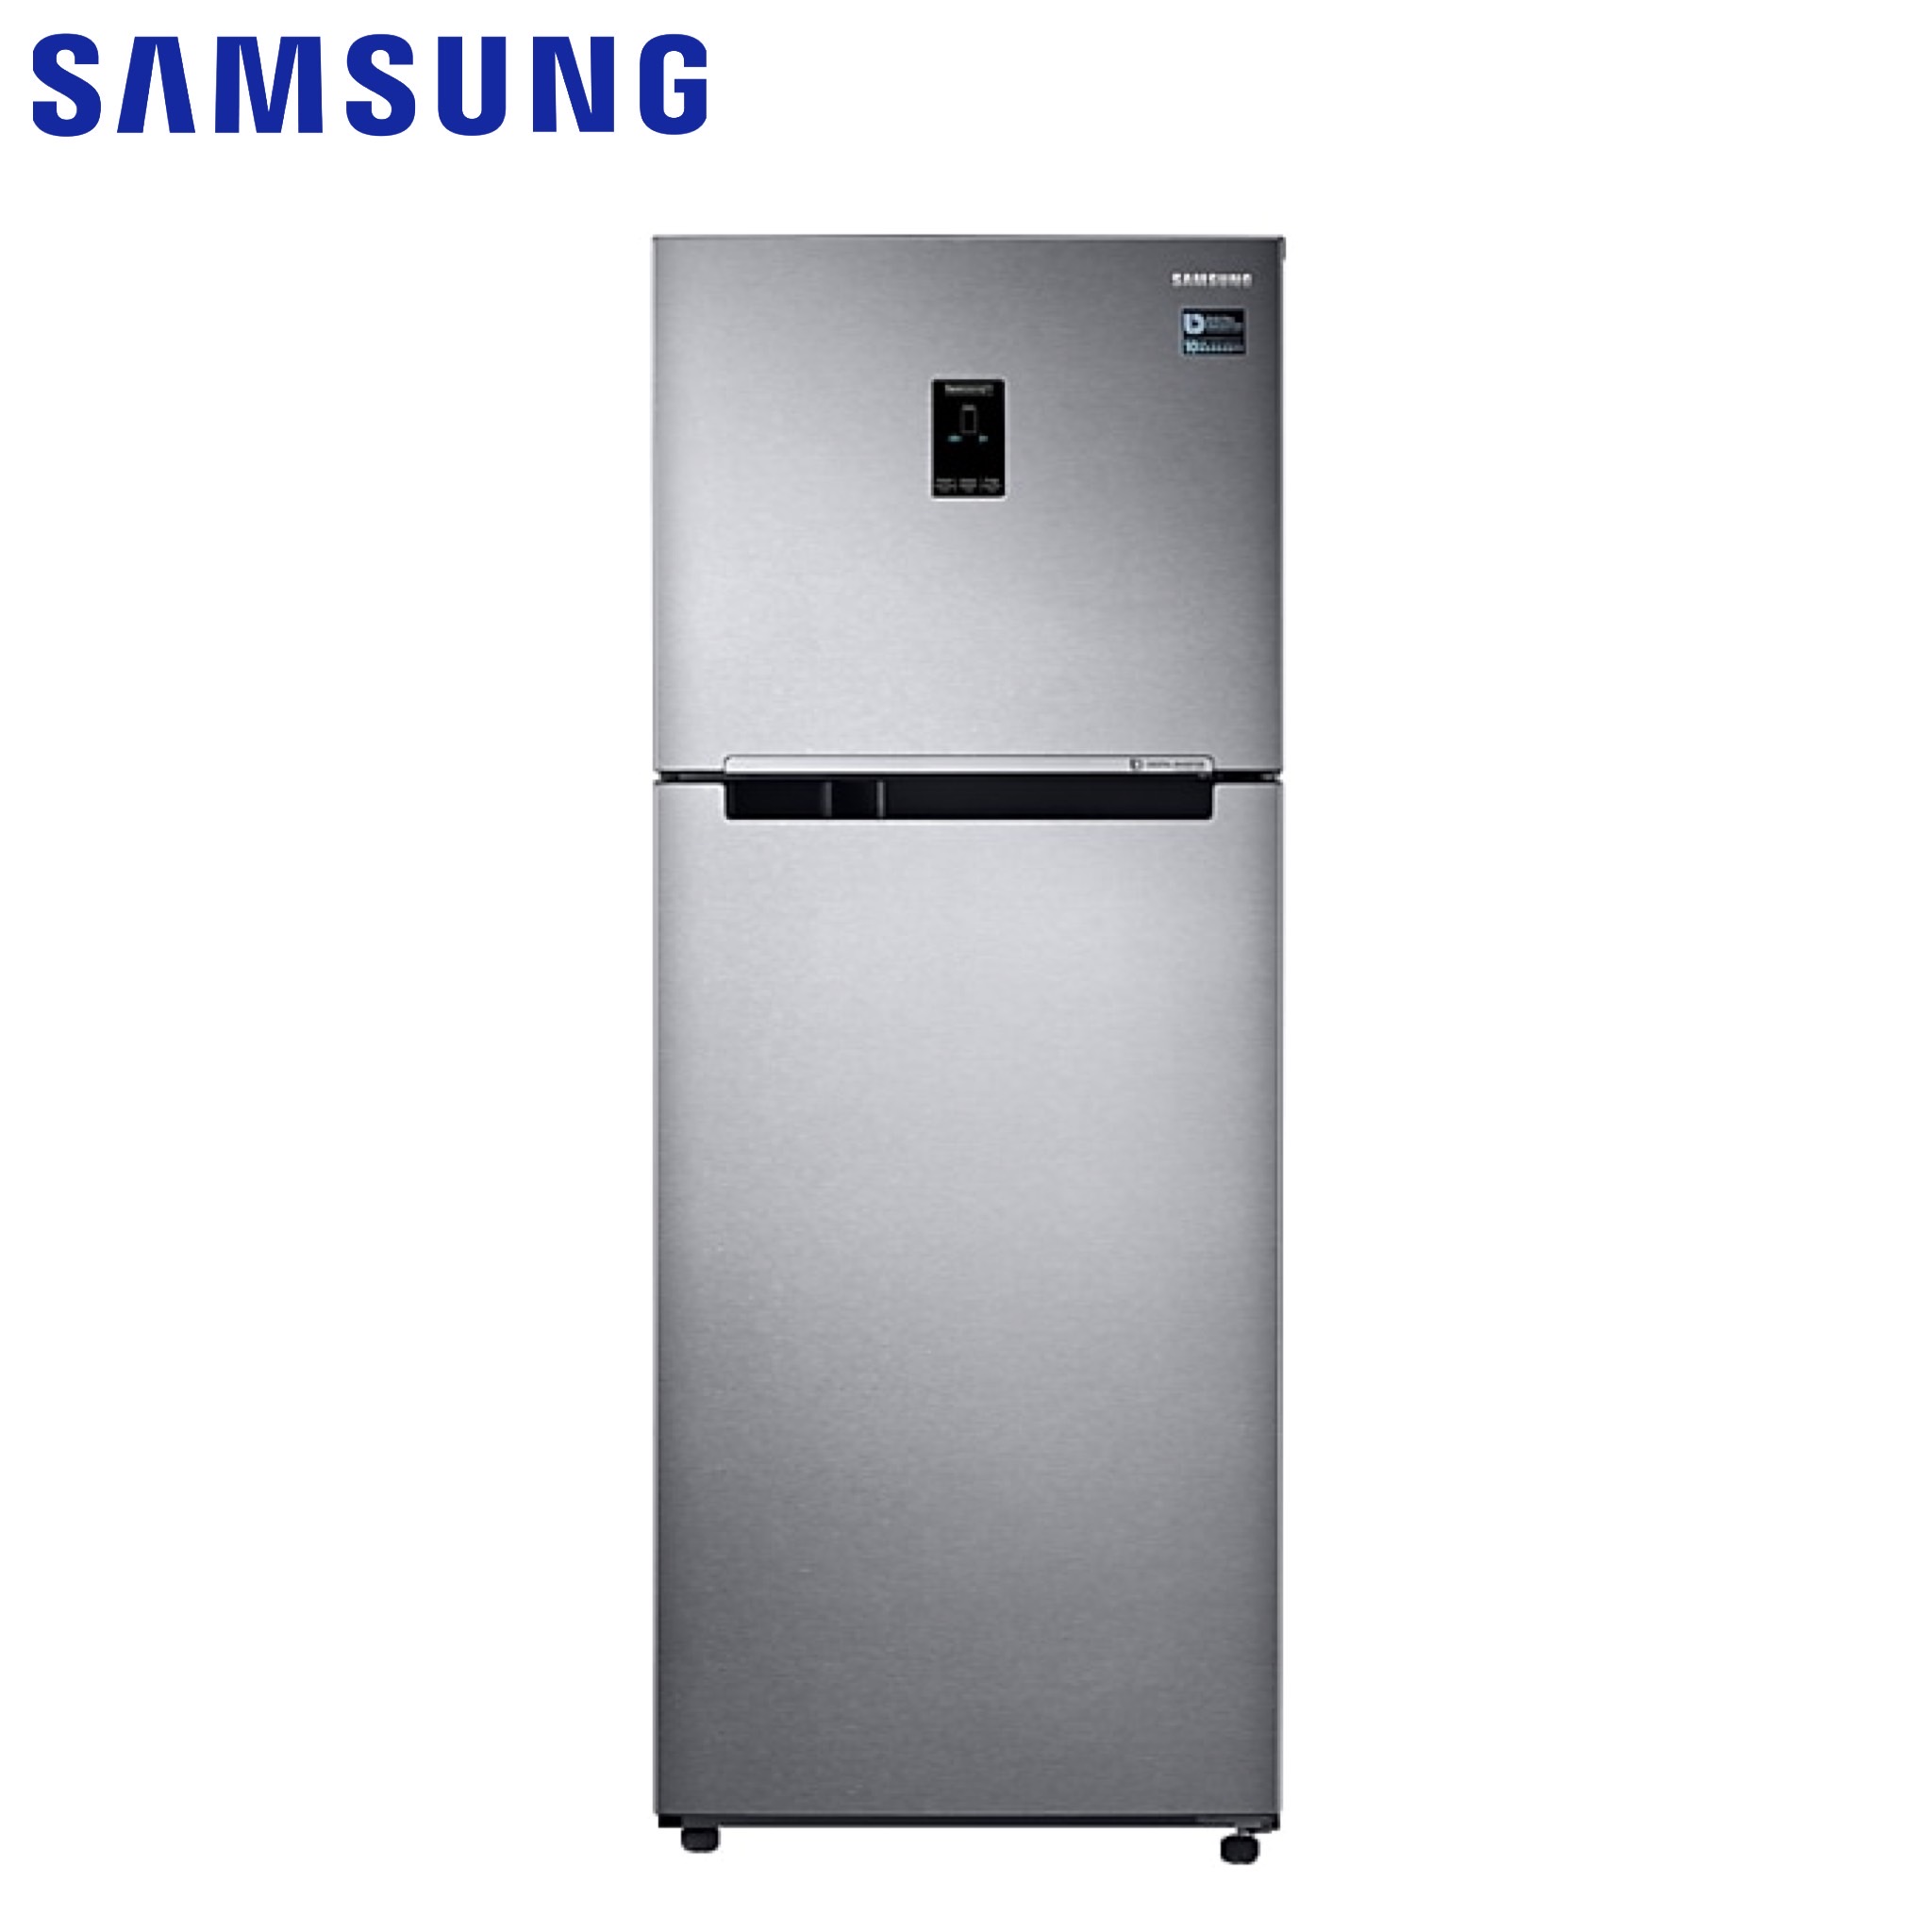 Двухкамерный холодильник морозильник. Холодильник Samsung rt22har4dsa/WT. Холодильник Samsung RT-22 har4dsa, серебристый. Холодильник Samsung RT-25 har4dsa. Холодильник Samsung RT 22 har4dsawt.